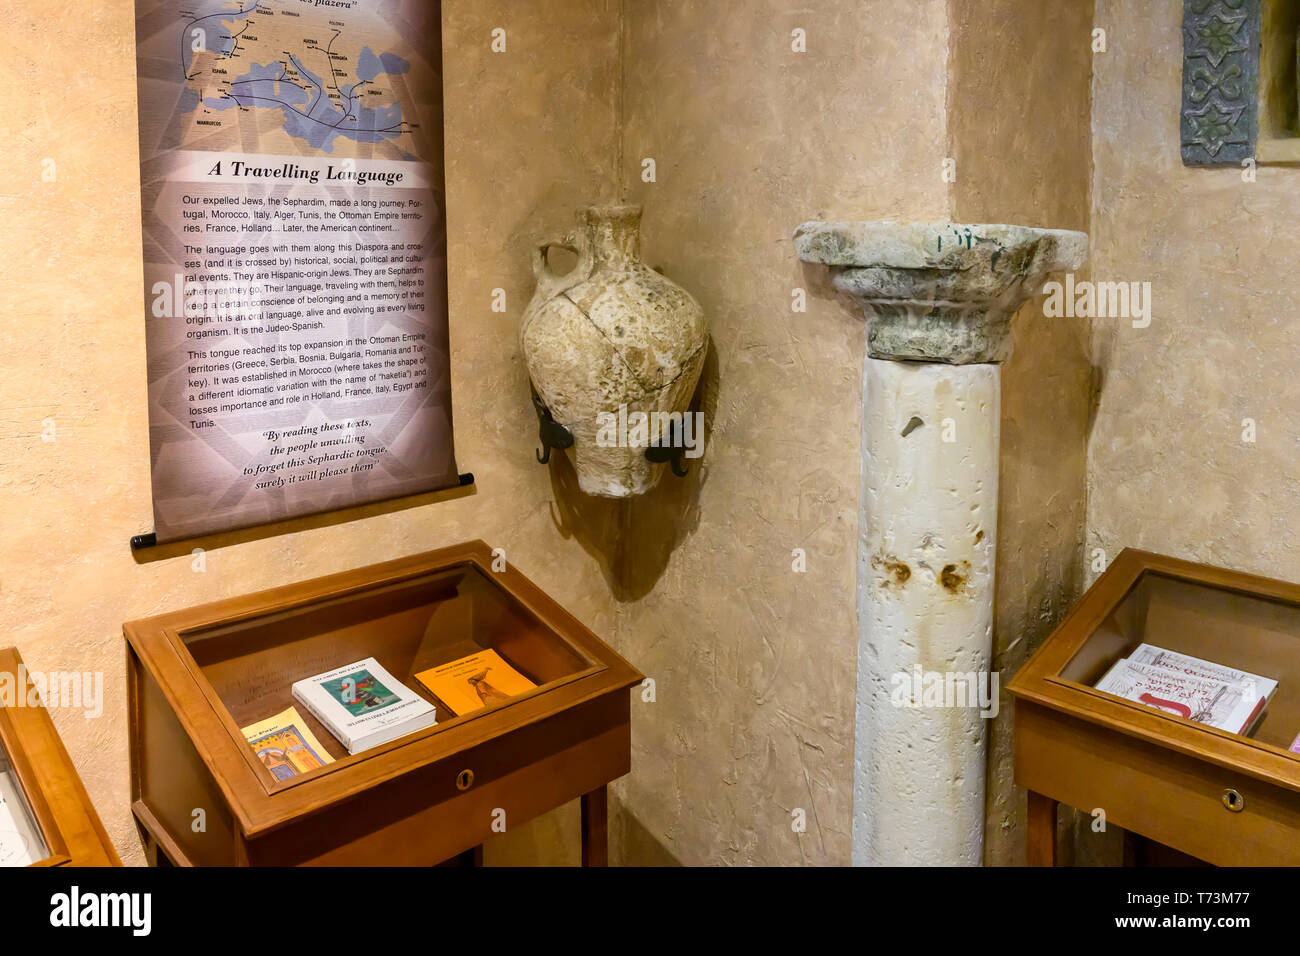 Affichage de l'exposition des artefacts et des dépliants, quartier juif de Cordoue, Cordoue, Espagne Banque D'Images